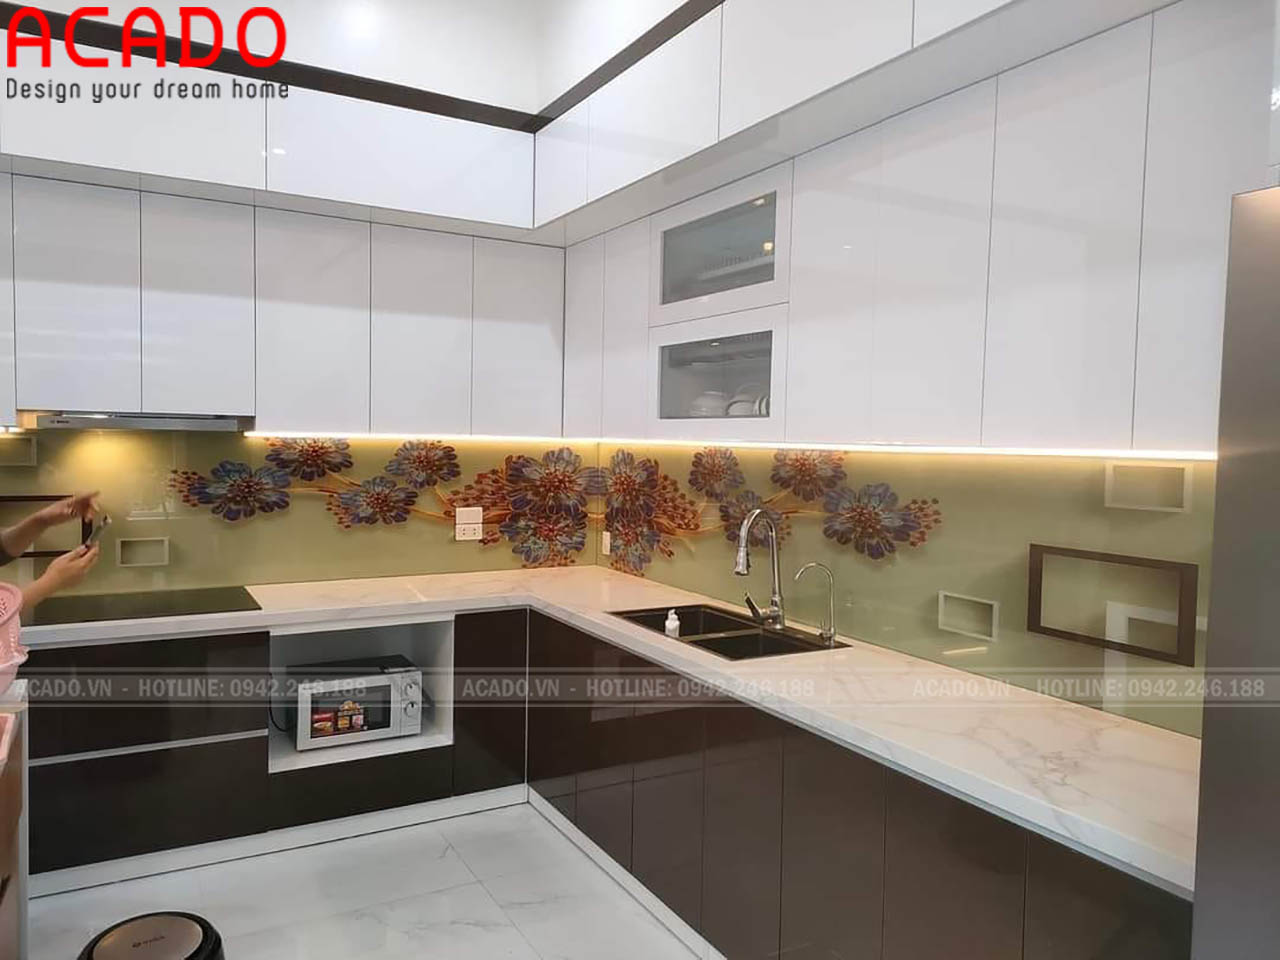 Thiết kế tủ bếp chất liệu Acrylic kết jopwj kính 3D - Tủ bếp tại thành phố Hưng Yên